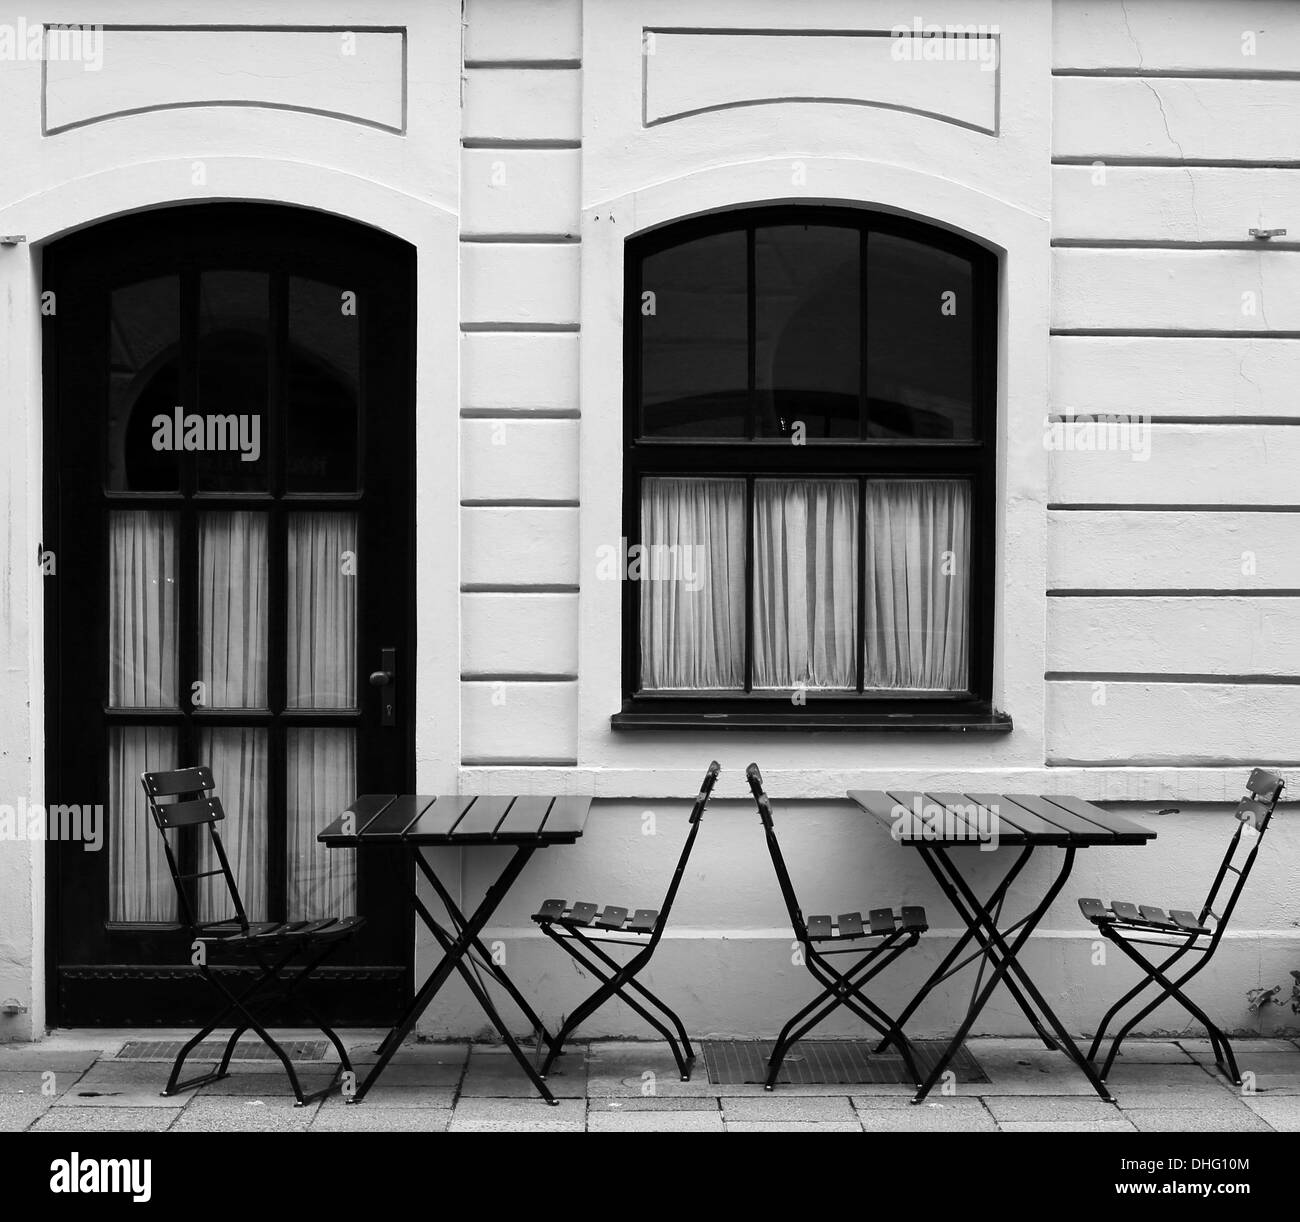 Street cafe in bianco e nero Foto Stock